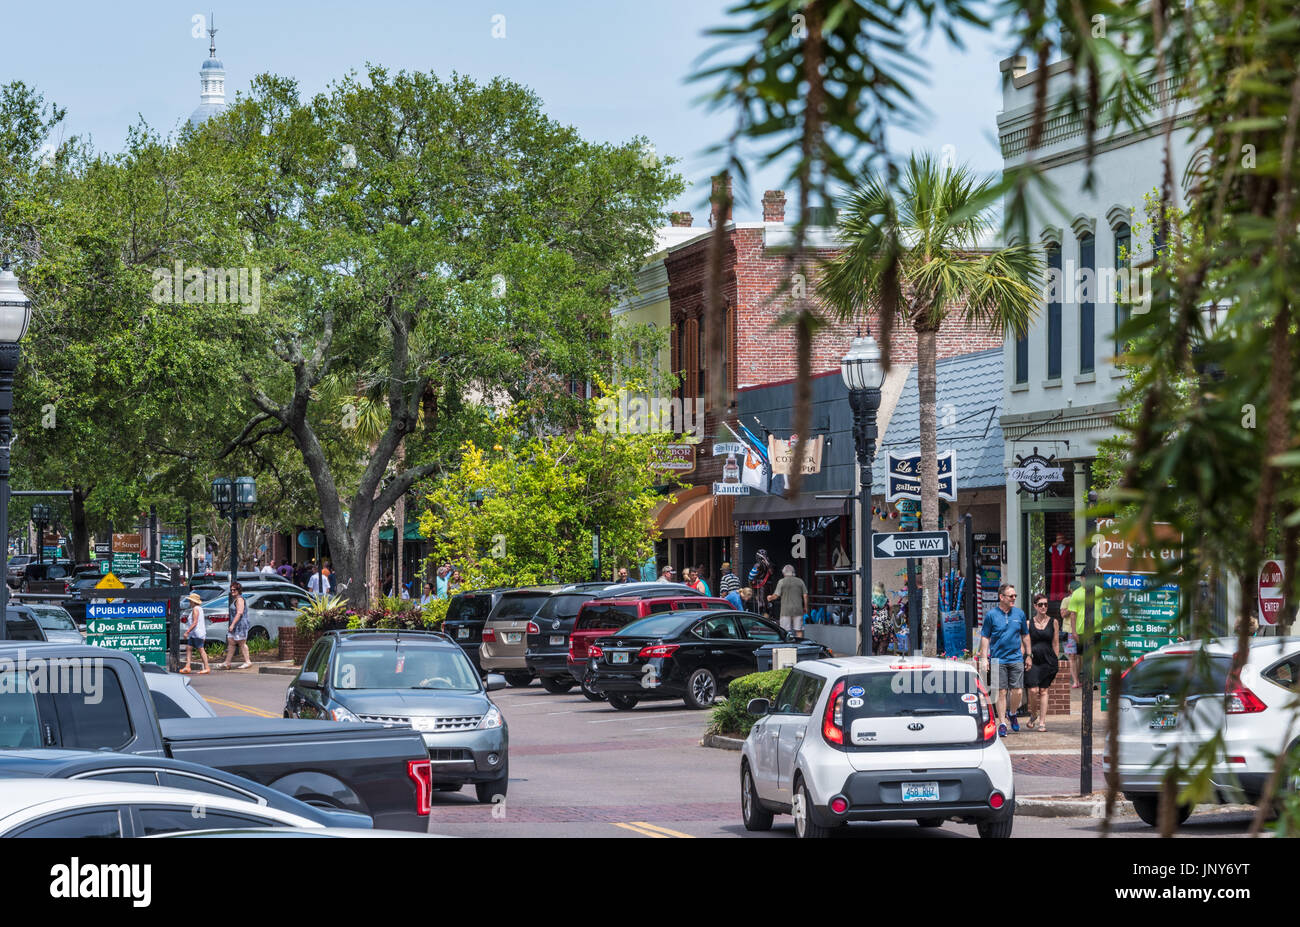 Le centre-ville de Fernandina Beach, dans le quartier historique du nord-est de la Floride sur Amelia Island. (USA) Banque D'Images